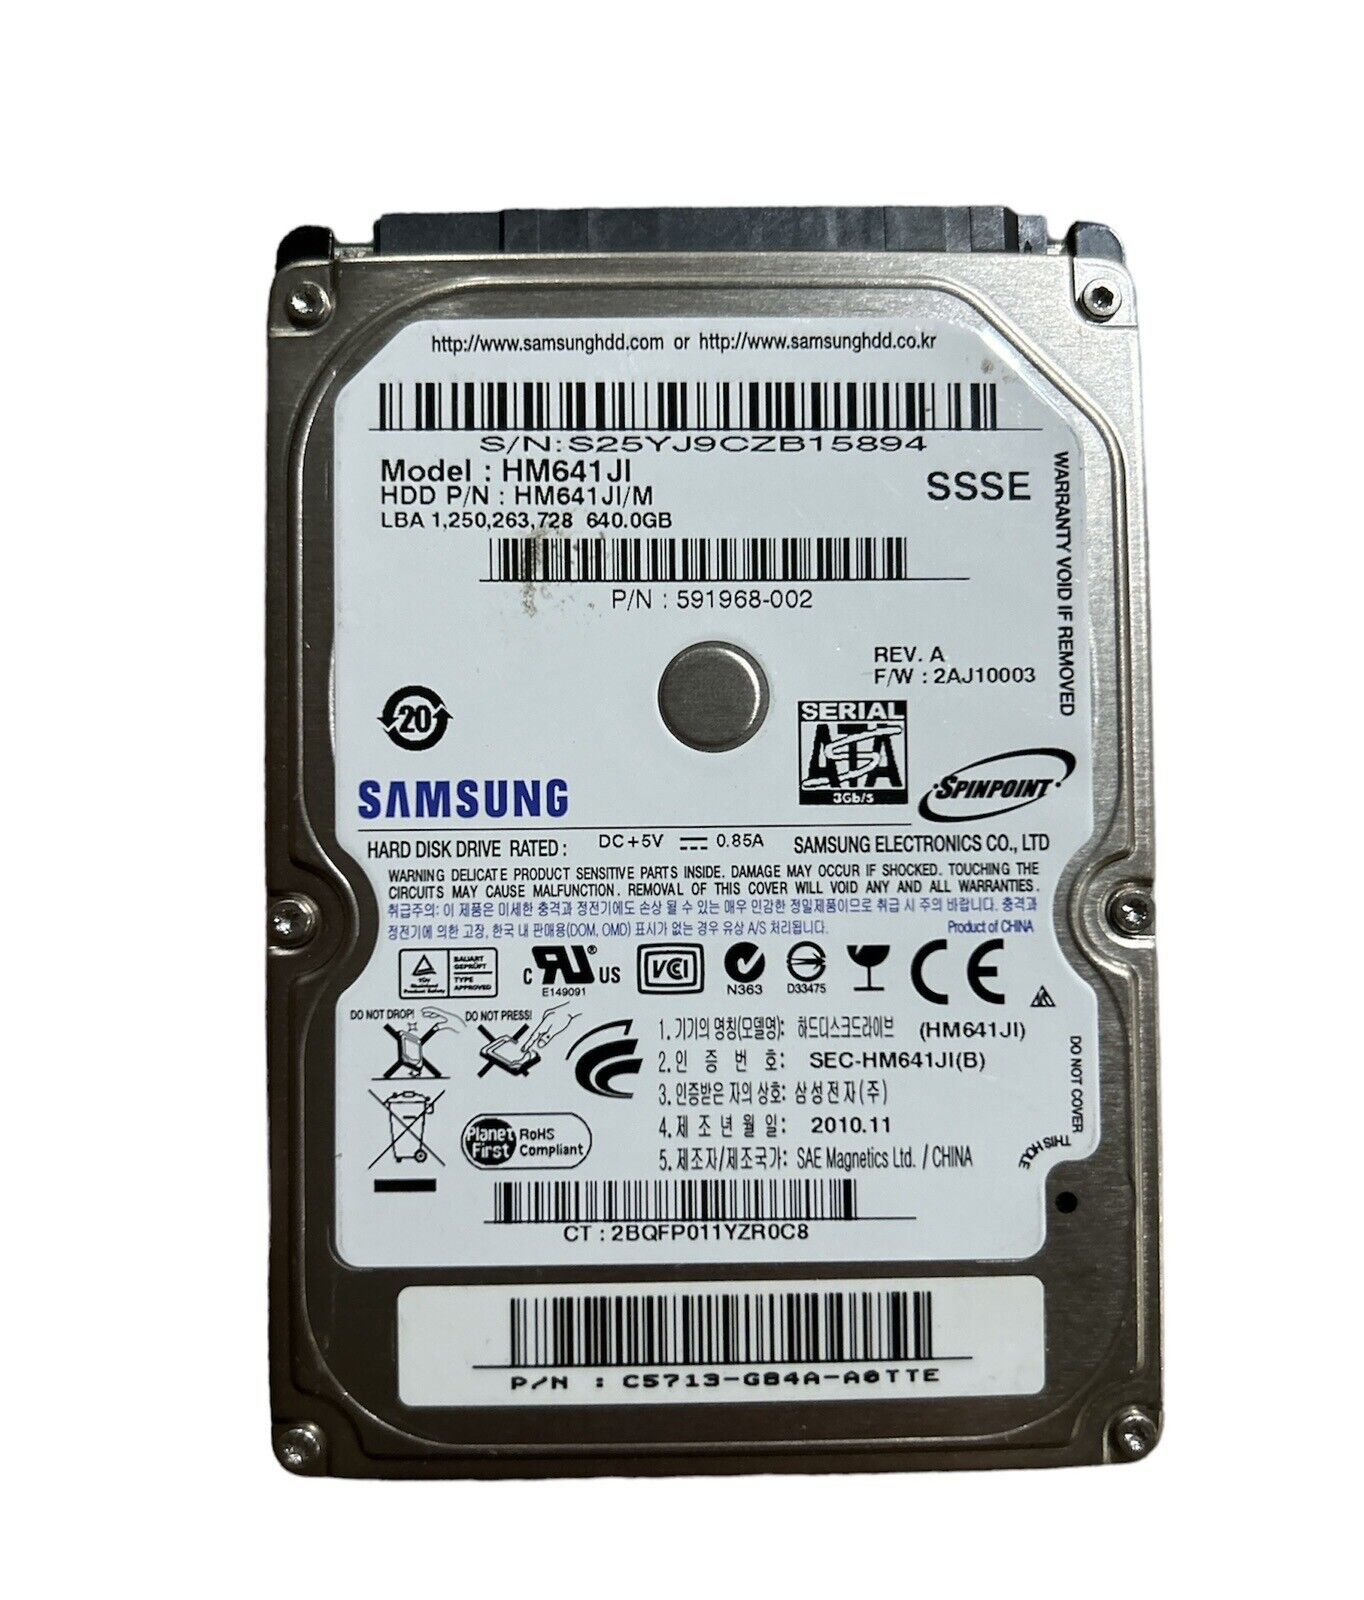 Samsung HM641JI pn: HM641JI/M 640GB 2.5